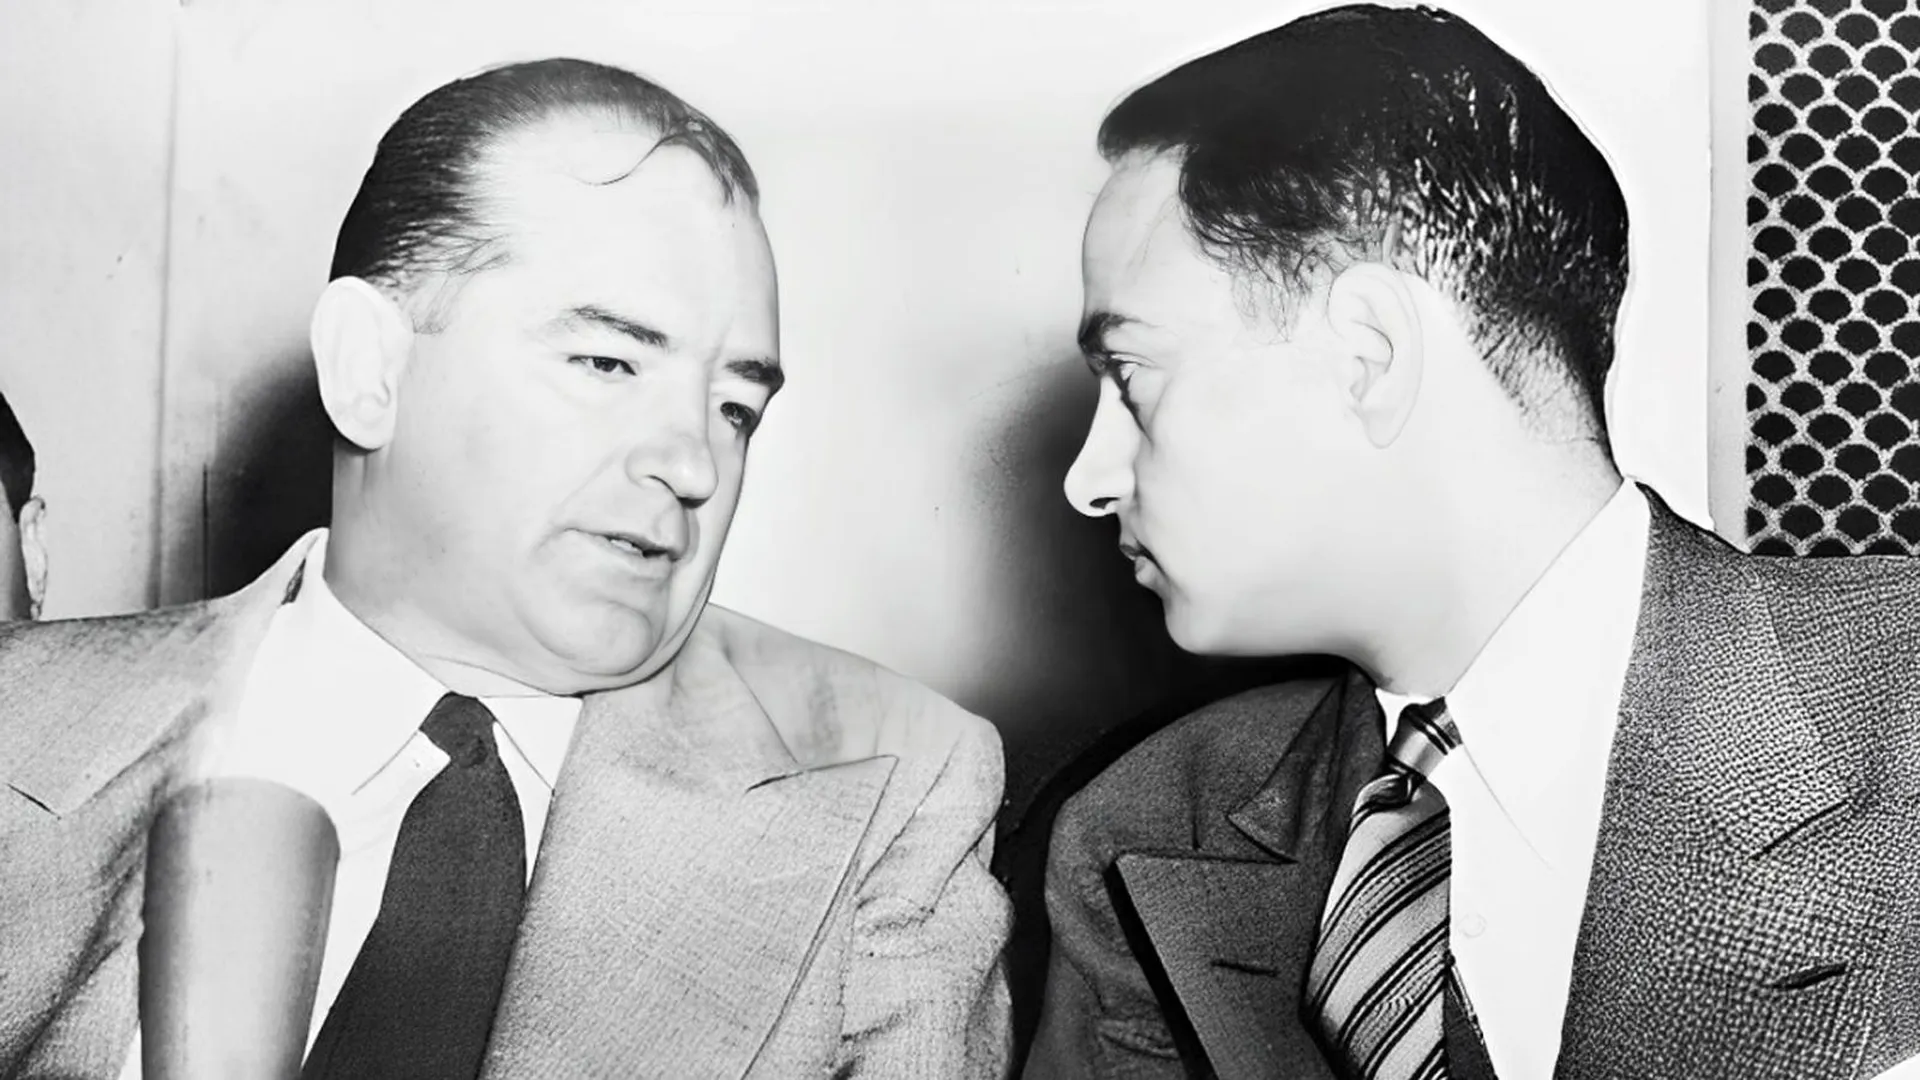 Сенатор Джозеф Маккарти и Рой Кон на слушаниях по делу Армия США против Маккарти, 1954 год